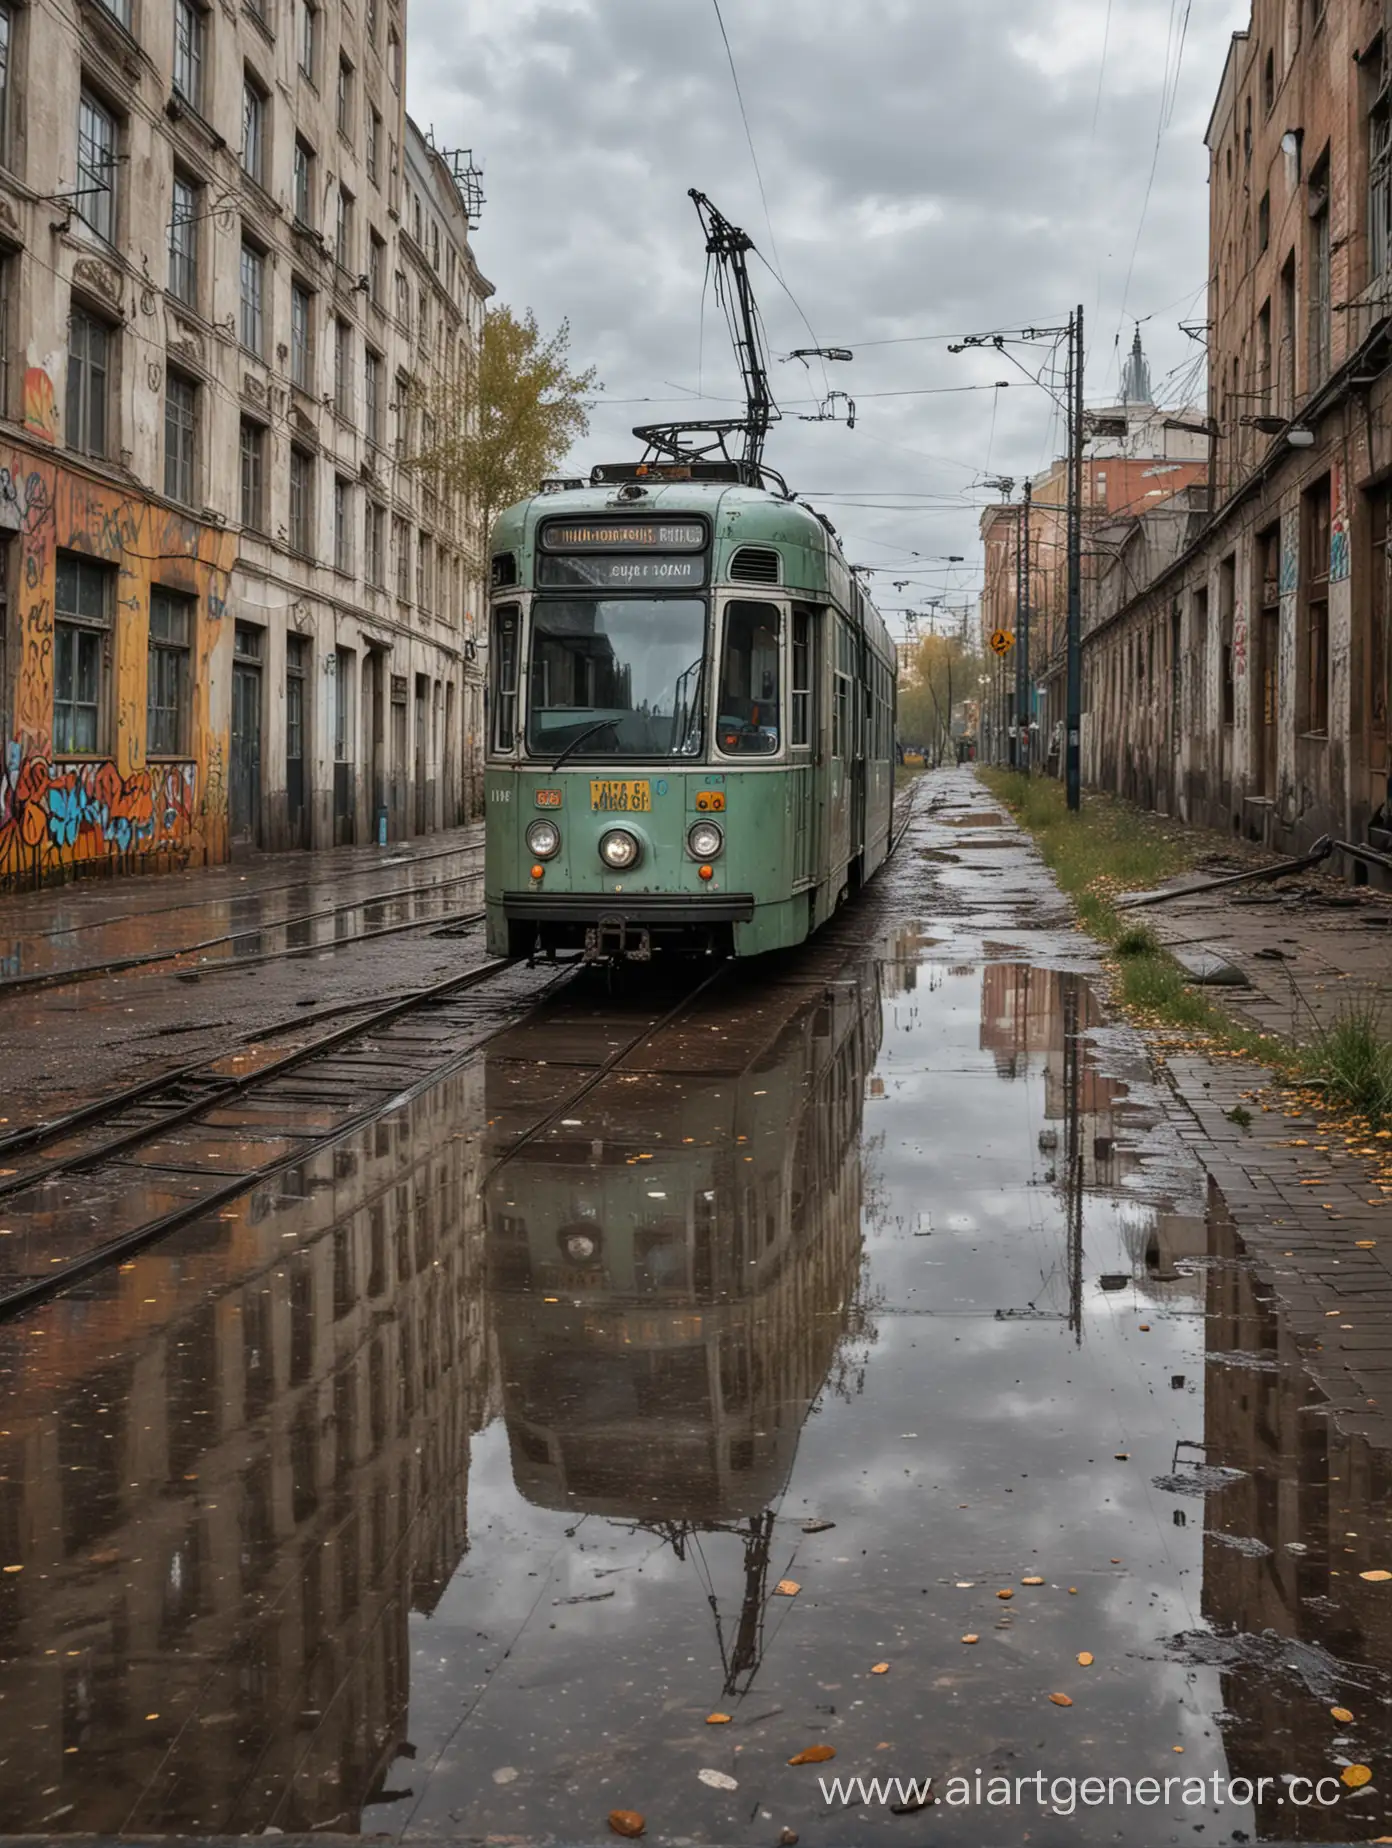 Заброшенный трамвай, город , Москва двор, граффити на трамвае осень дождь тучи серые 